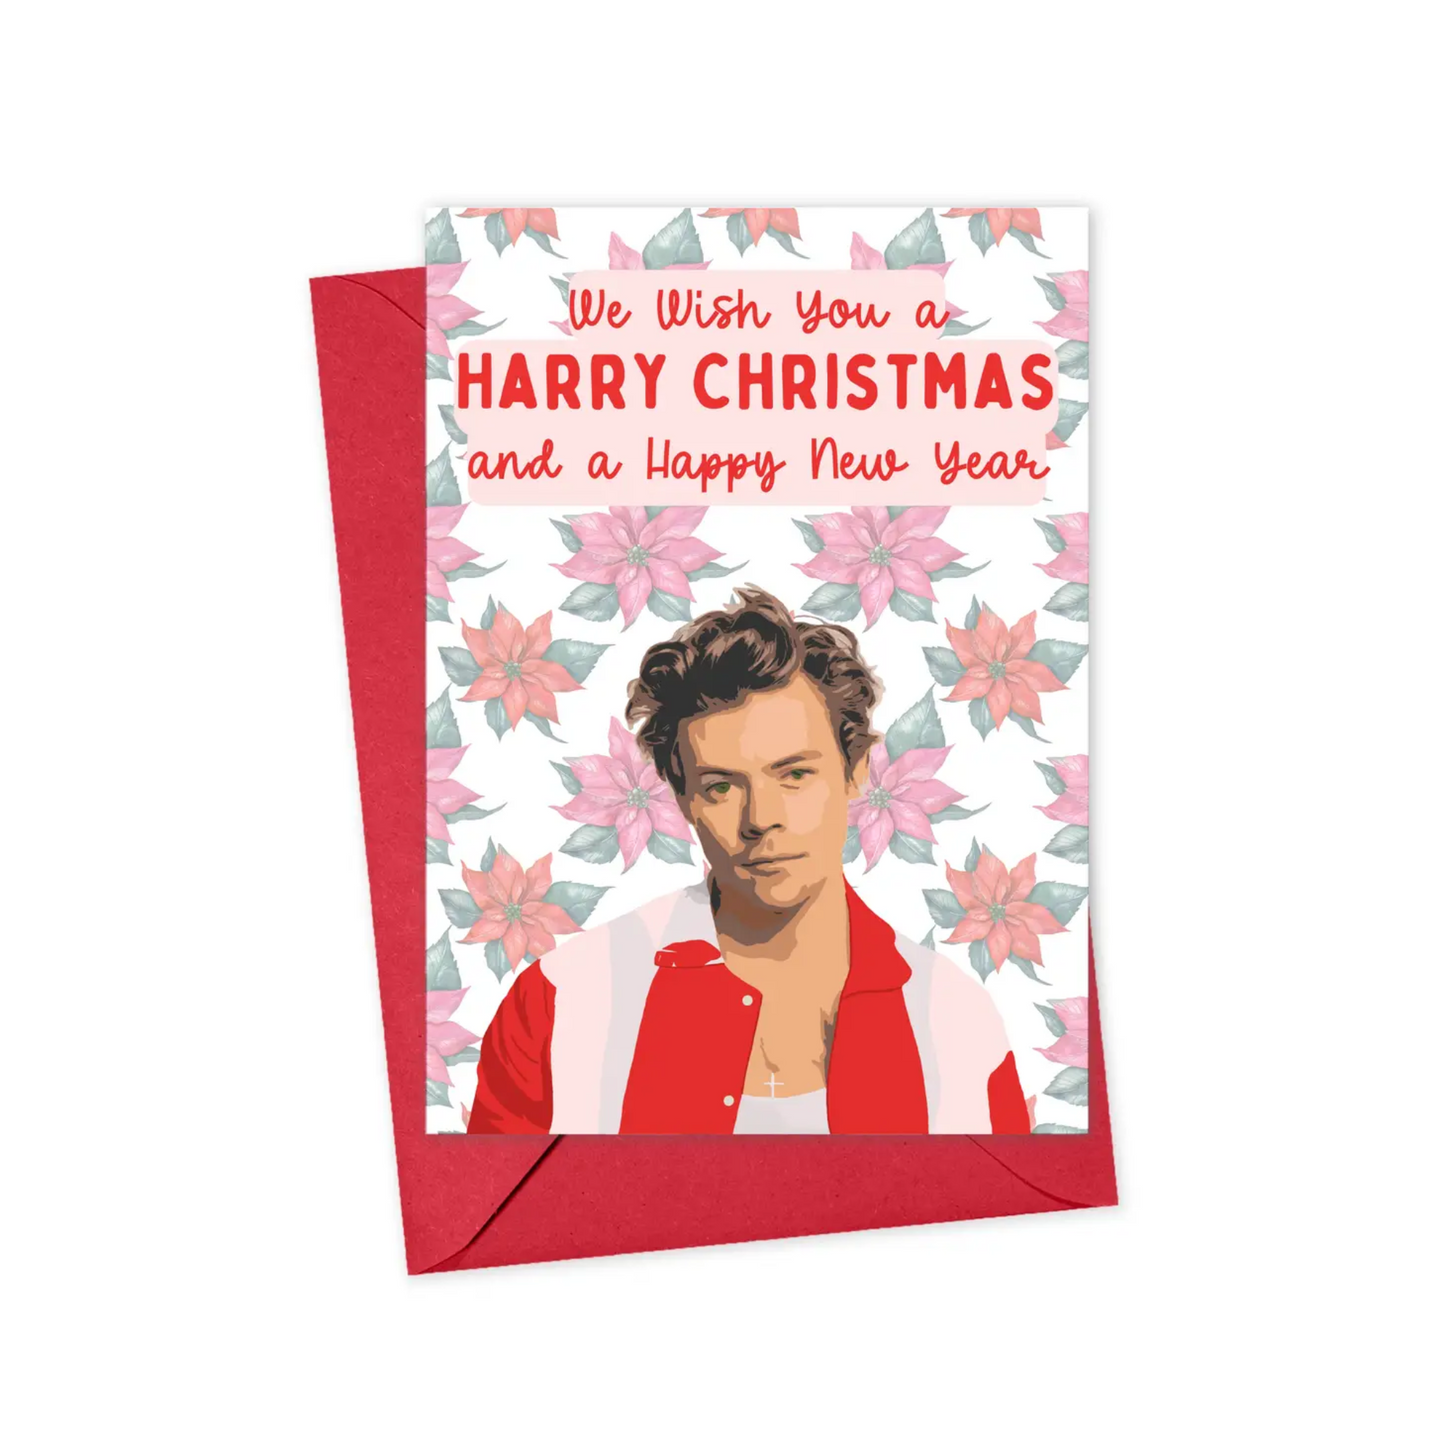 A Very Harry Christmas - Christmas Card